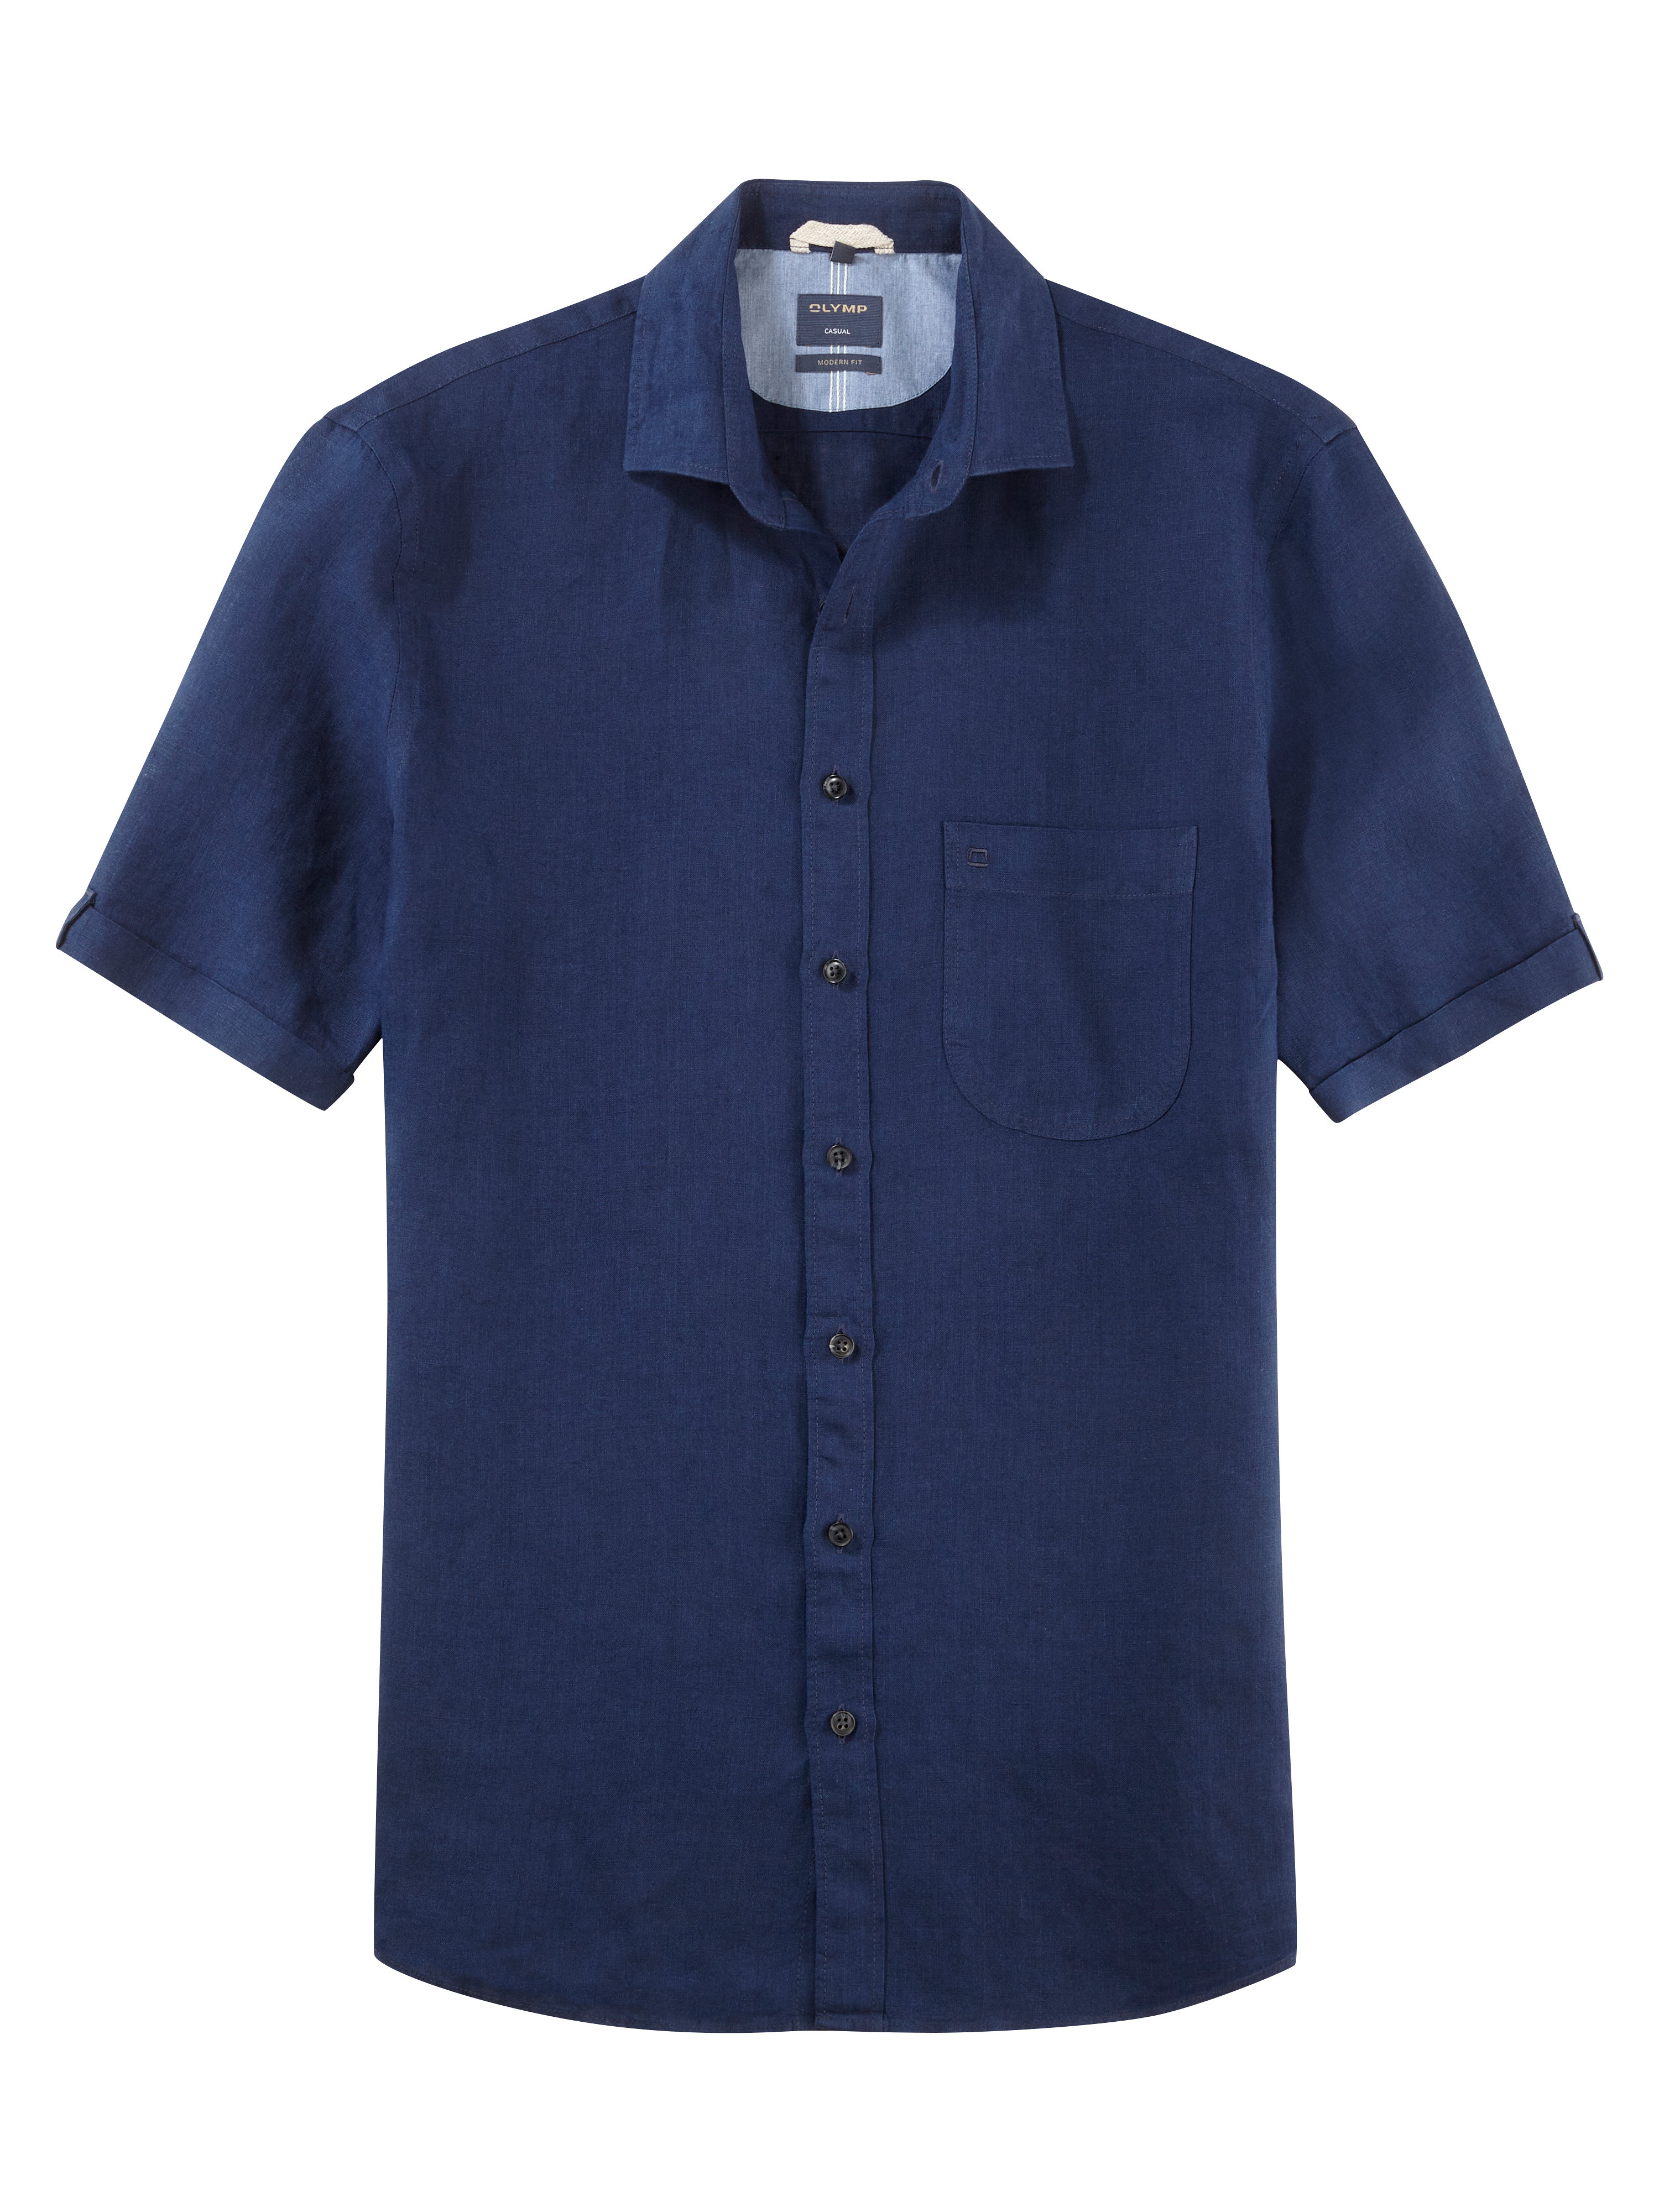 OLYMP Modern Fit pánská lněná košile s krátkým rukávem 4026 18 32 Modrá L